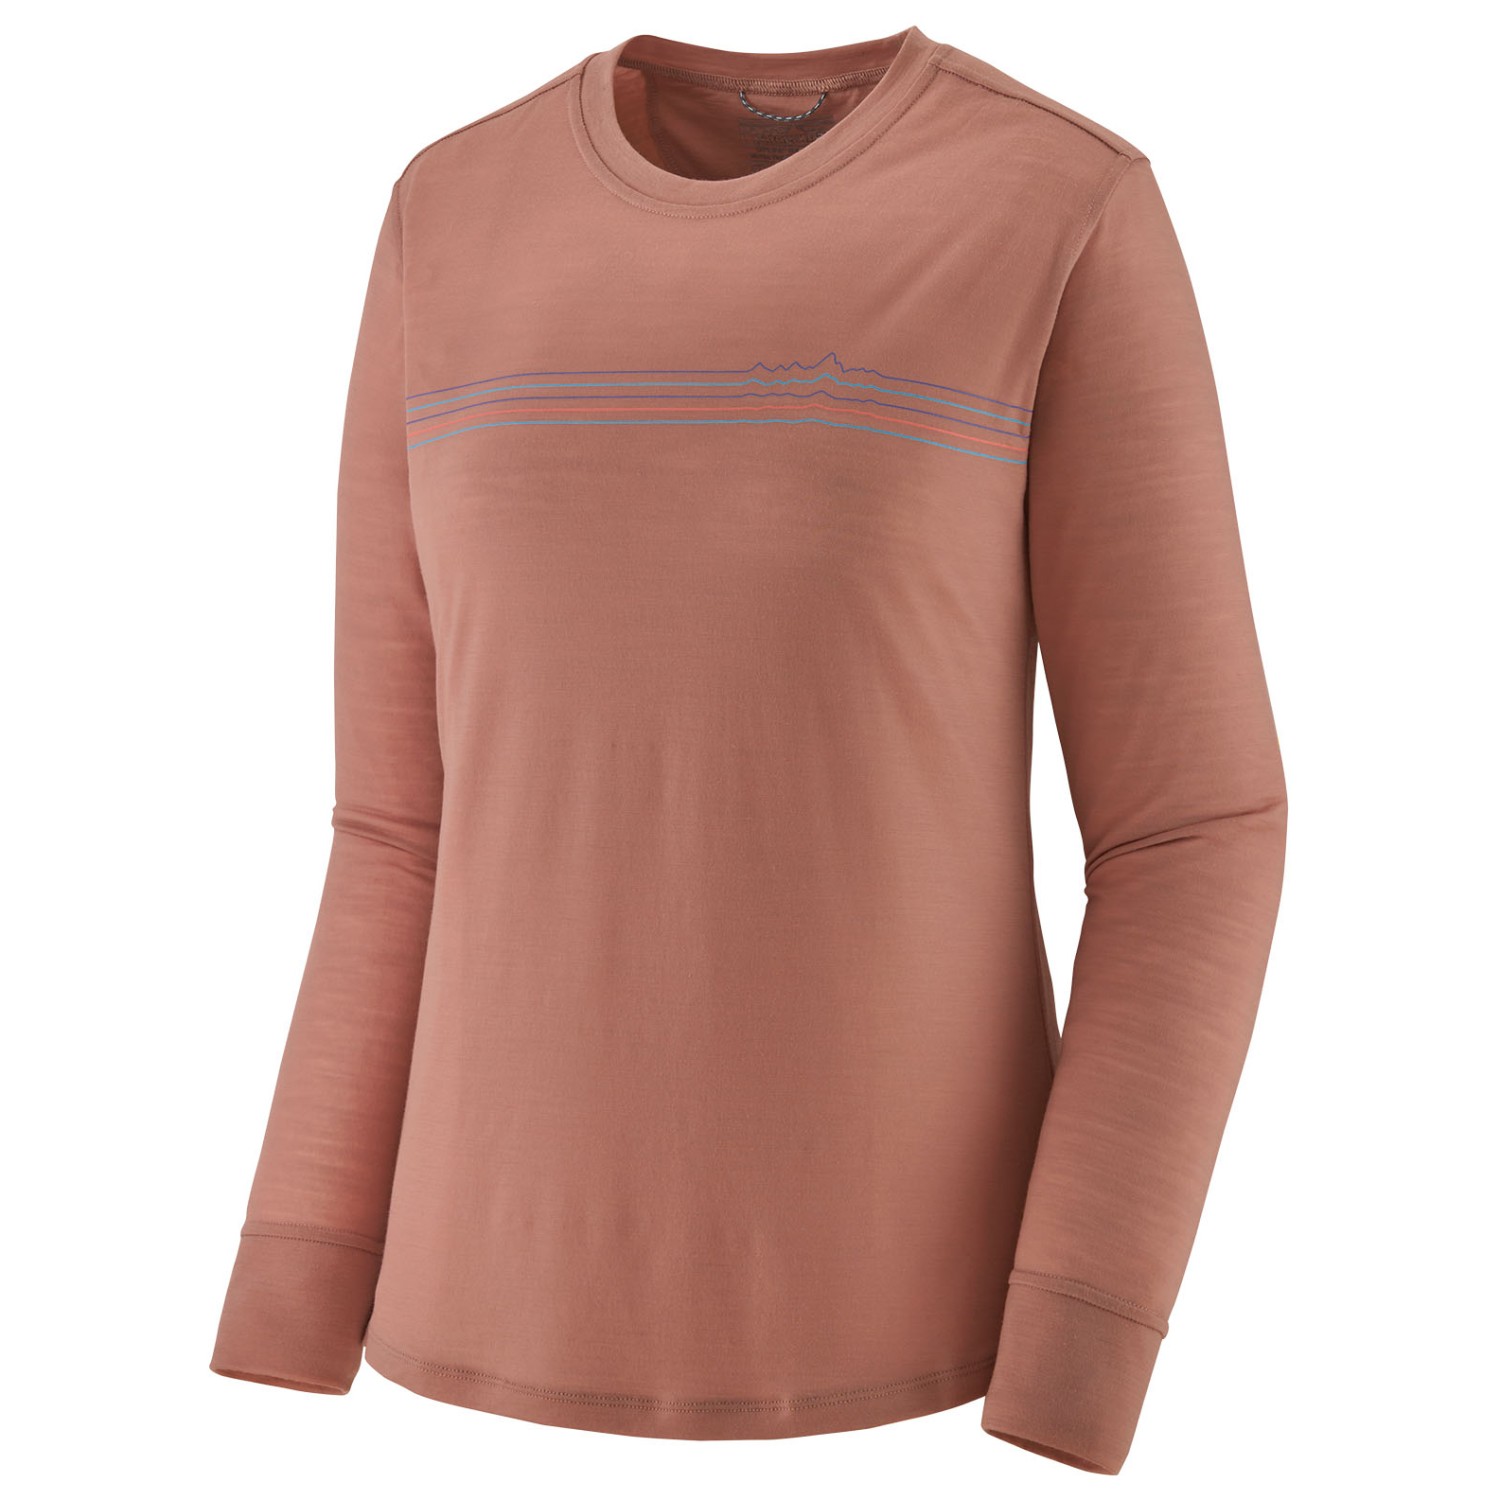 Рубашка из мериноса Patagonia Women's L/S Cap Cool Merino Graphic Shirt, цвет Fitz Roy Fader/Terra Pink рубашка cool club светлая на 2 года